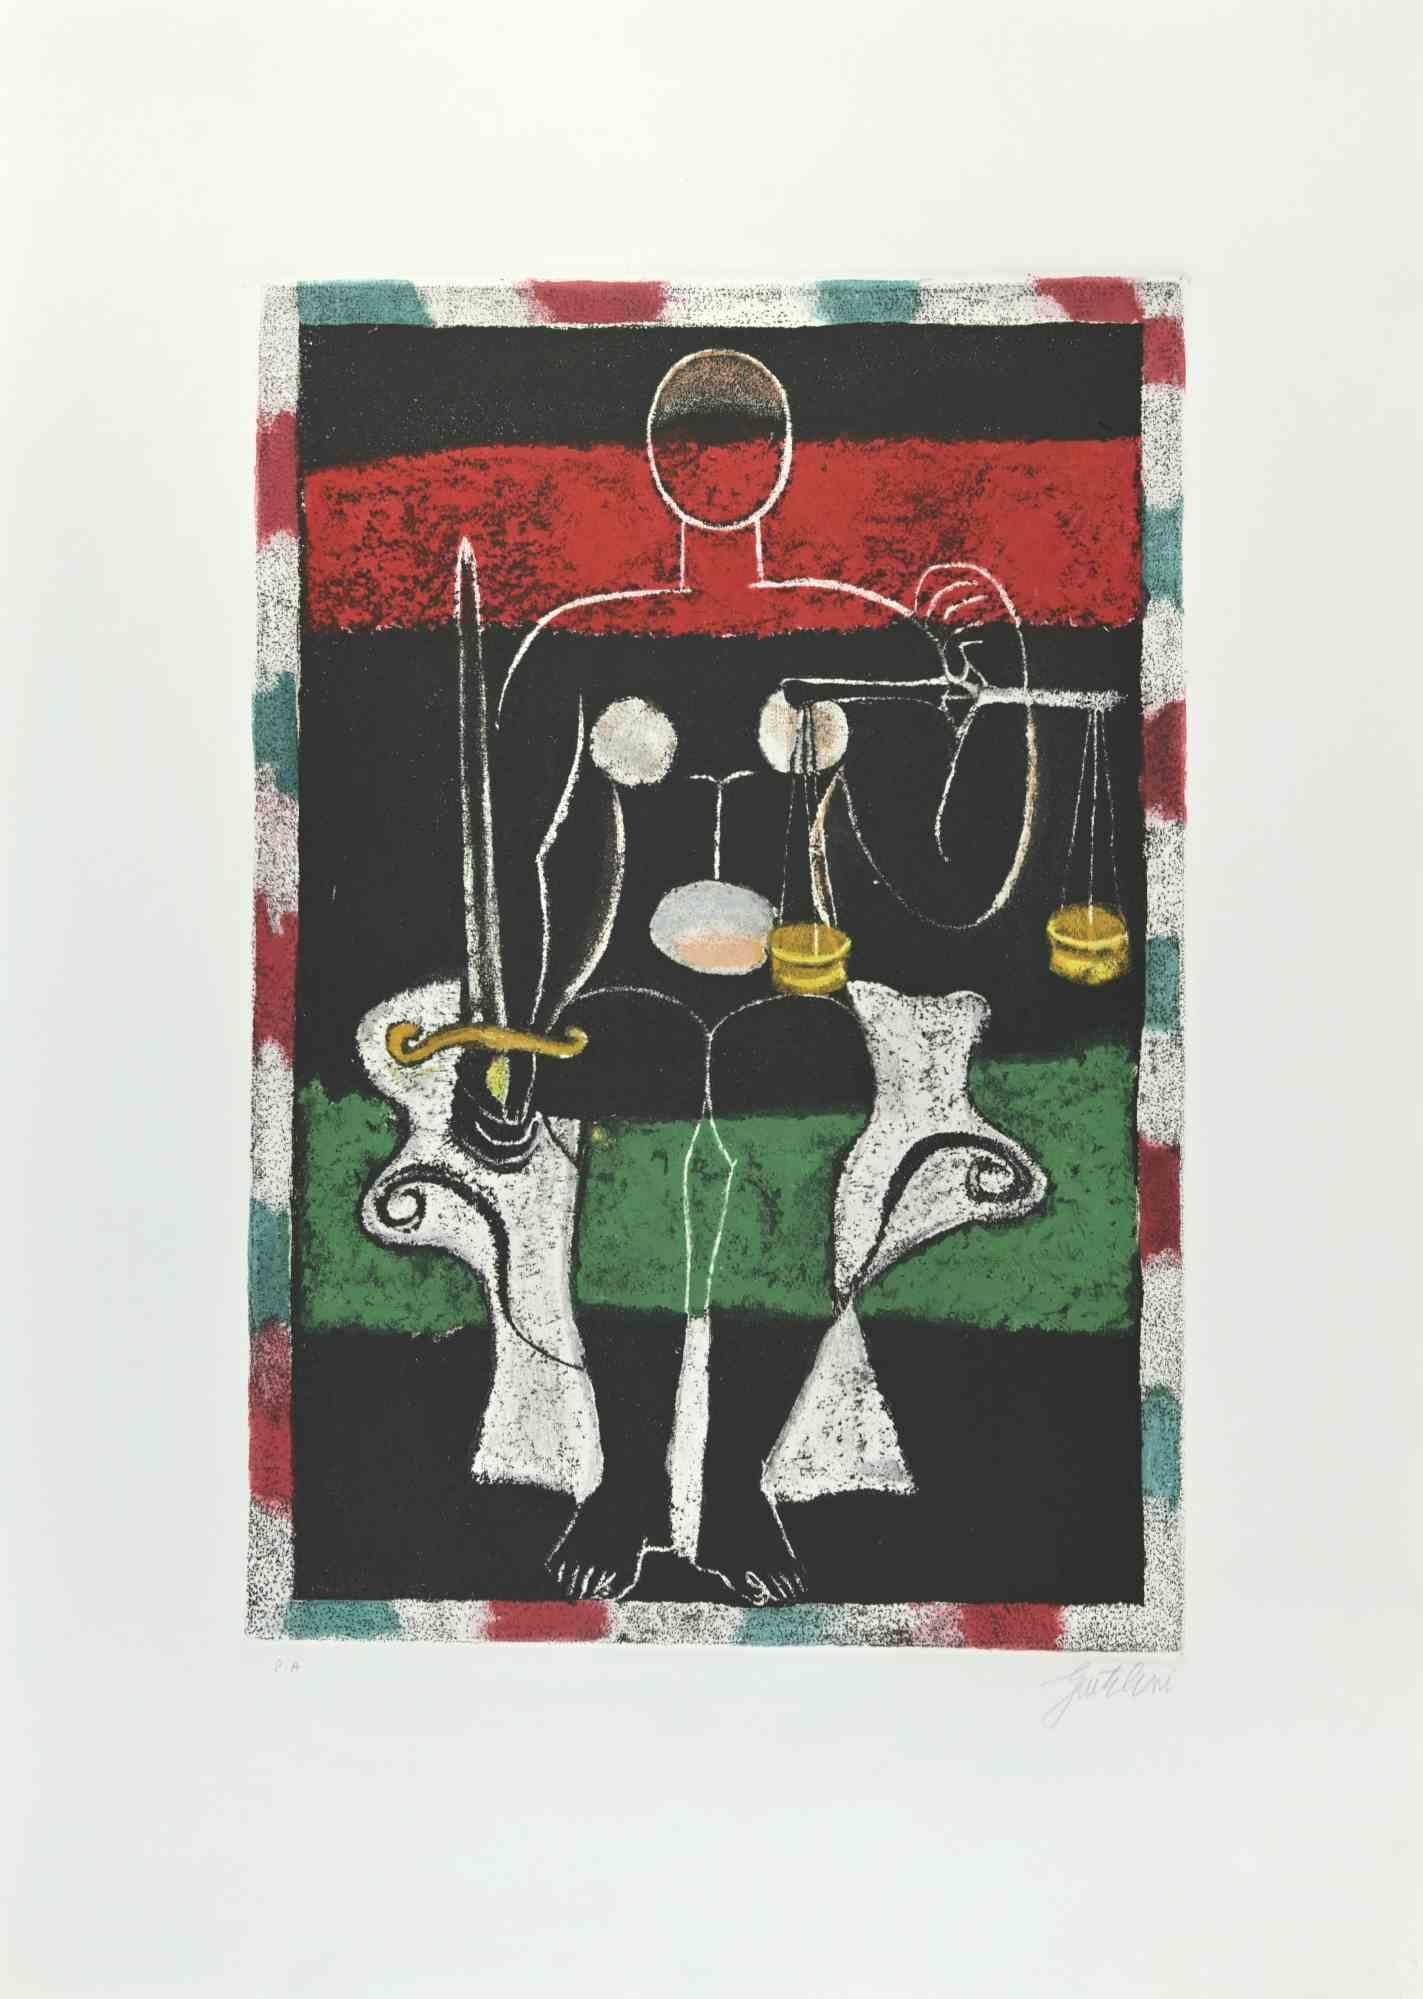 Die Gerechtigkeit ist eine Radierung und Aquatinta von Franco Gentilini (italienischer Maler, 1909-1981) aus den 1970er Jahren.

Aus der Serie "Die Tarots" Trockenstempel von Il Cigno Stamperia d'Arte. 

Handsigniert mit Bleistift auf der unteren